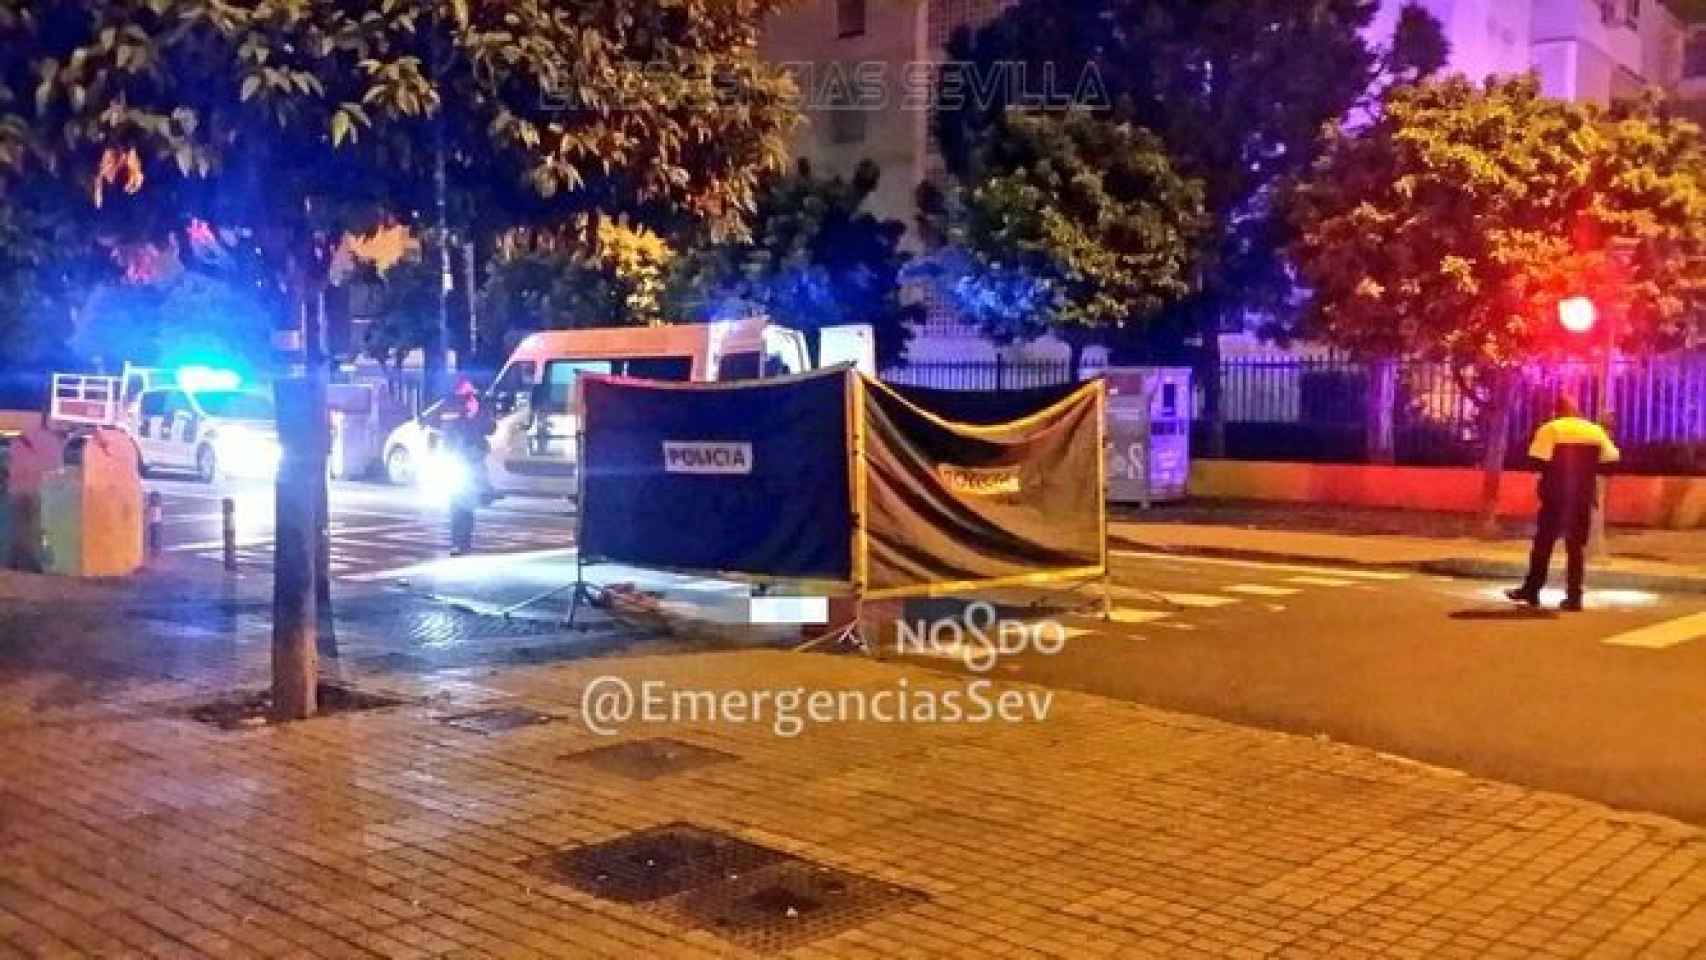 Policías locales de Sevilla trabajan en el lugar donde se produjo el atropello.